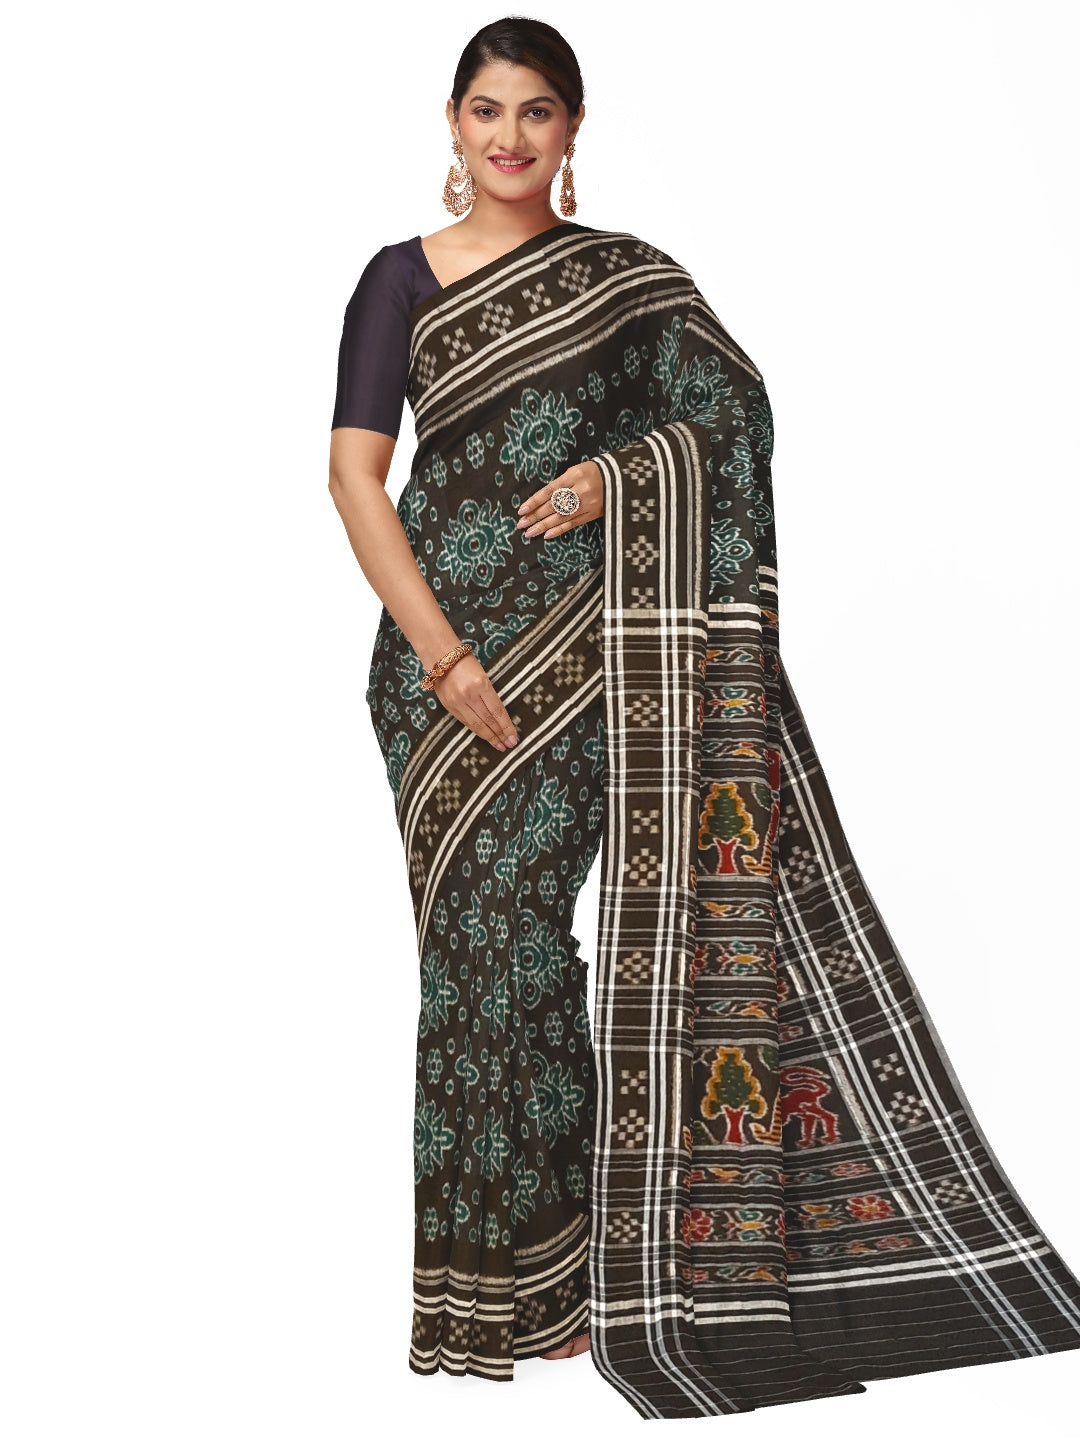 Black Odisha Ikat saree with woven motifs